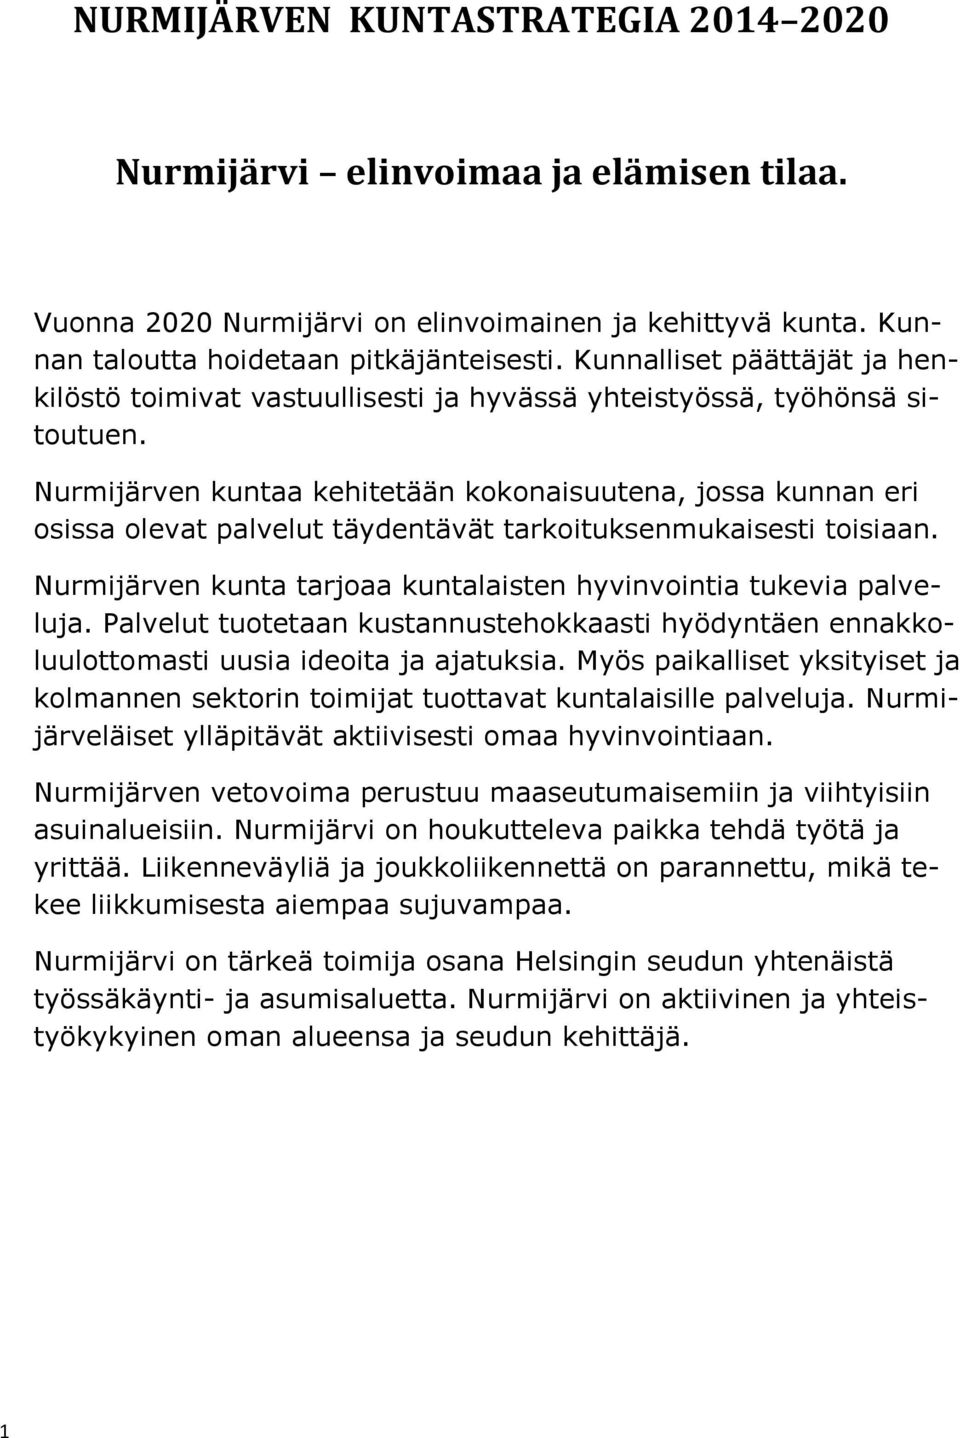 Nurmijärven kuntaa kehitetään kokonaisuutena, jossa kunnan eri osissa olevat palvelut täydentävät tarkoituksenmukaisesti toisiaan.